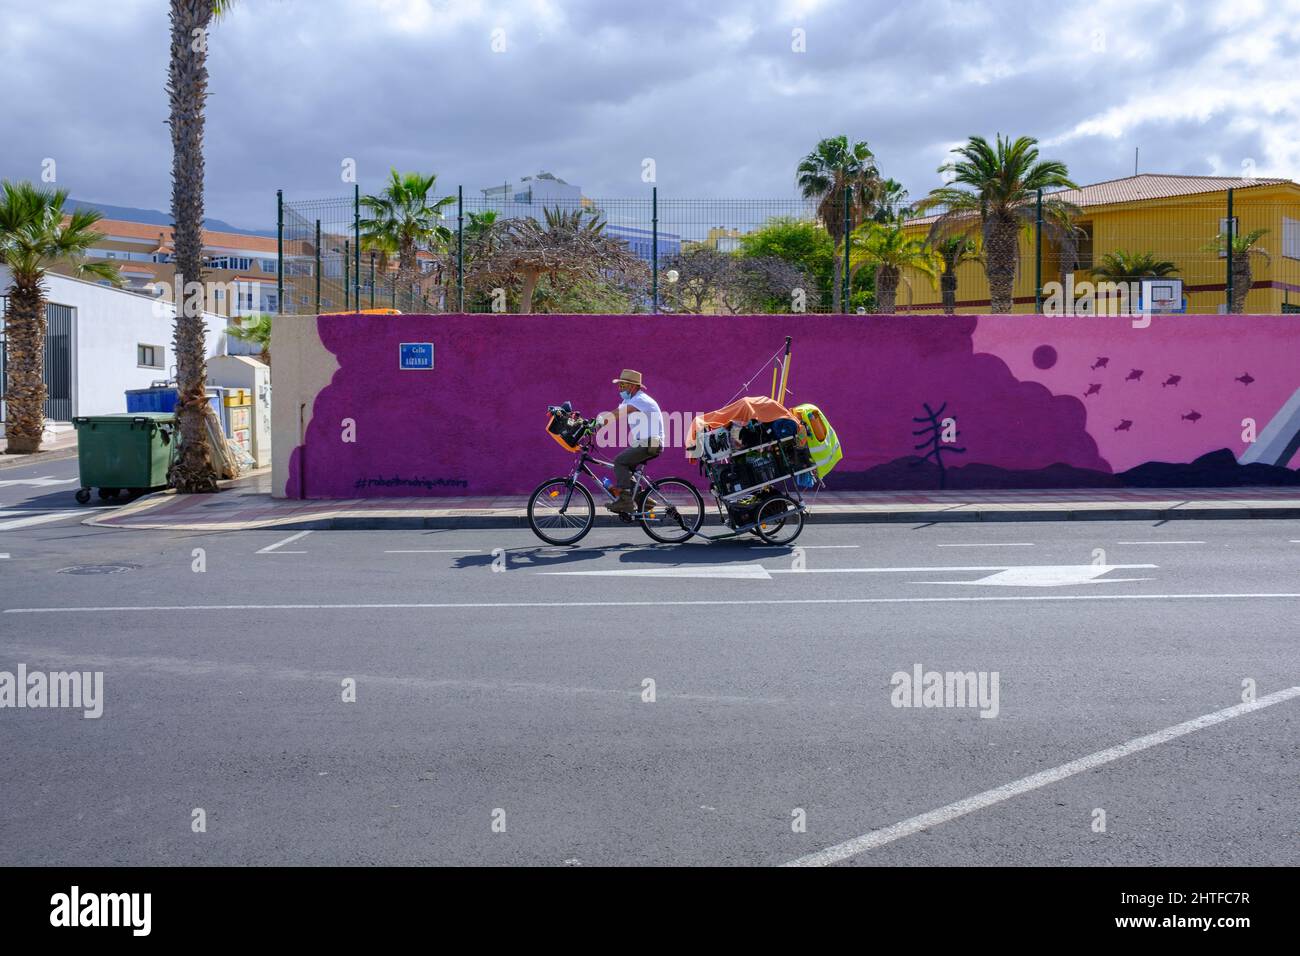 Il rimorchio per il traino di ciclisti passa davanti a un murale presso la scuola elementare locale di Playa San Juan, Tenerife, Isole Canarie, Spagna Foto Stock